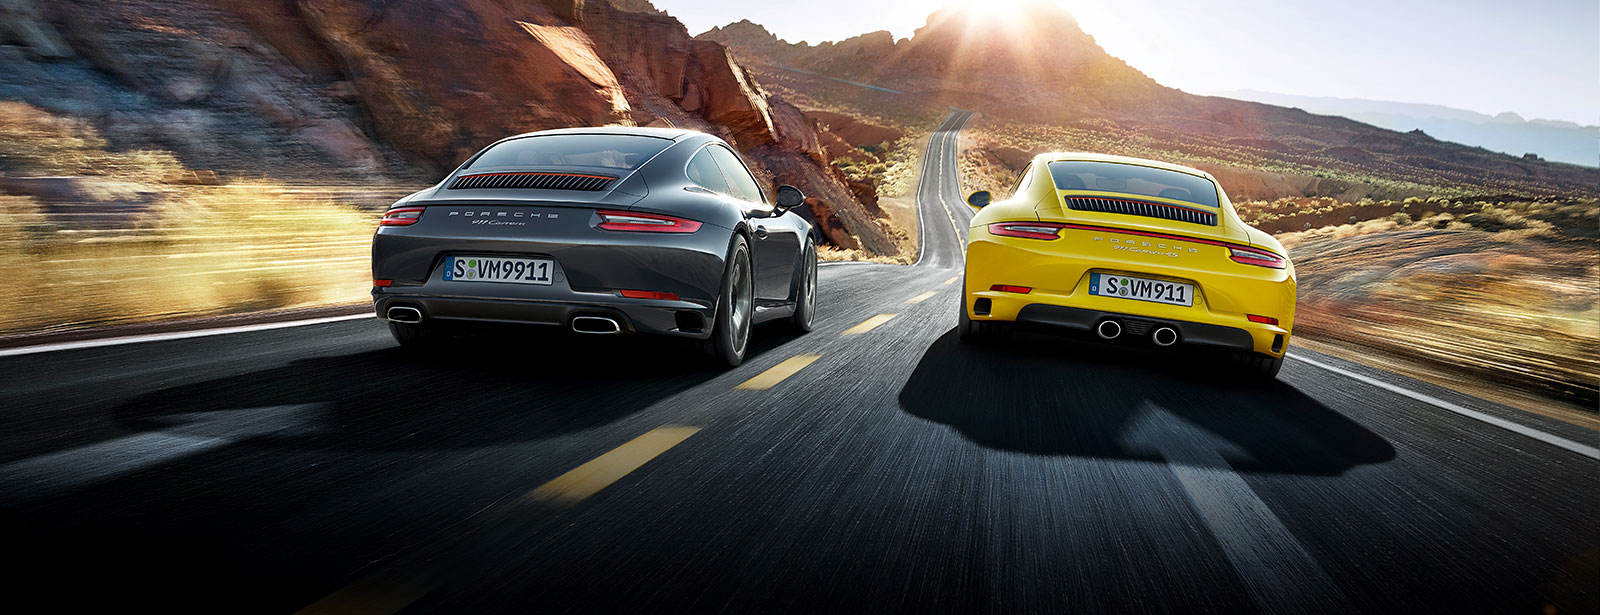 Porsche 911 Carrera HD wallpapers, Desktop wallpaper - most viewed